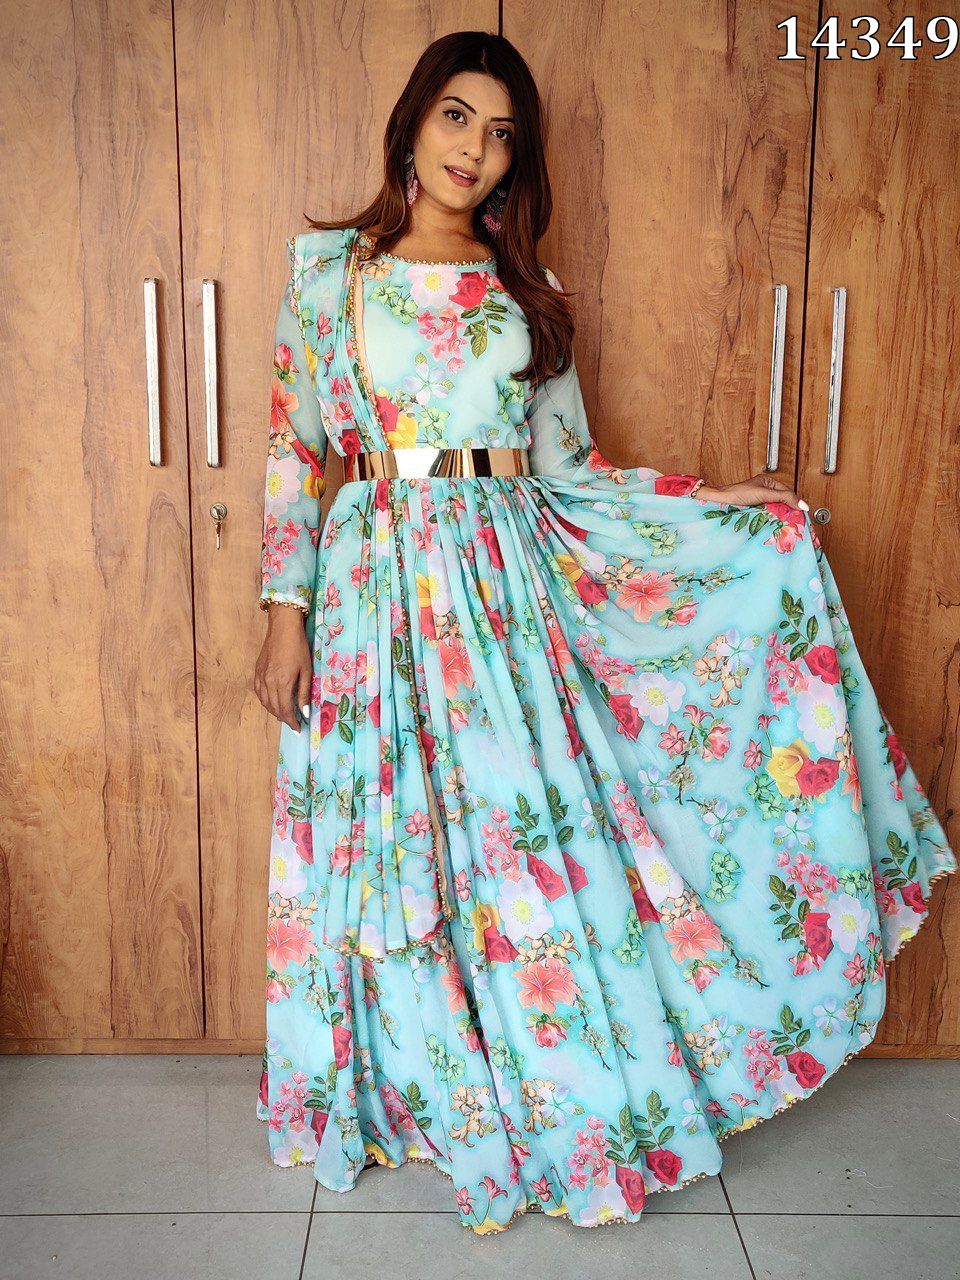 Floral Dresses - Buy Floral Dresses online at Best Prices in India |  Flipkart.com